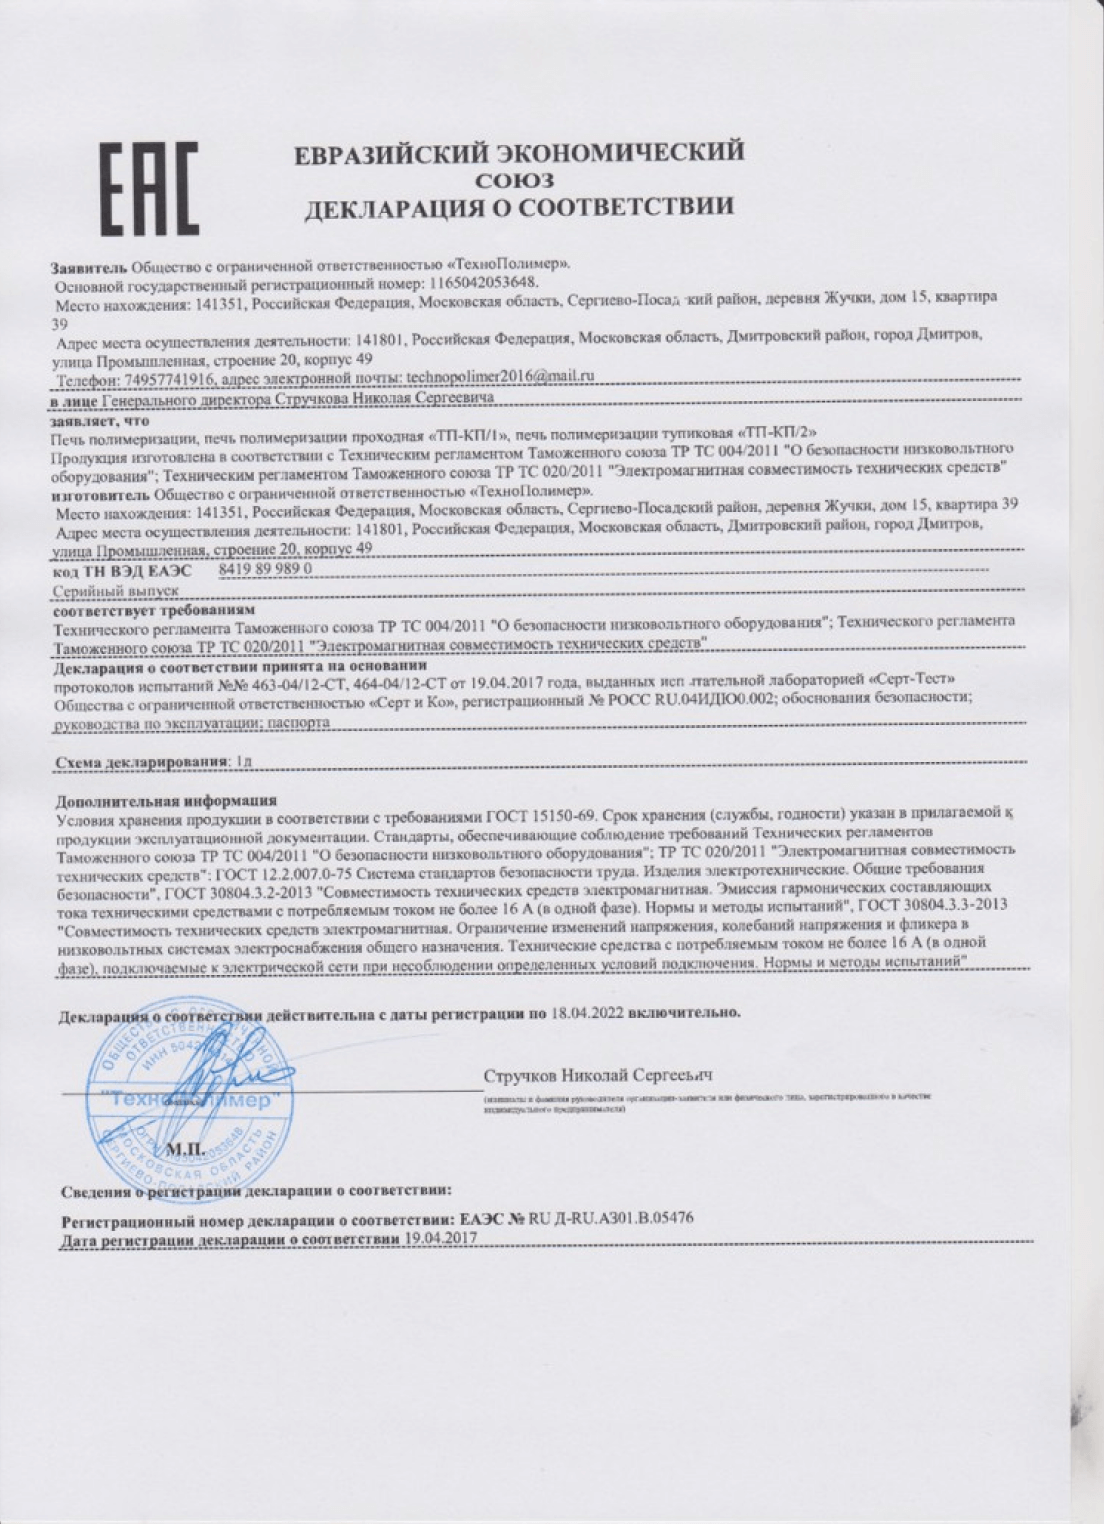 Сертификат соответствия тр ТС 014/2011